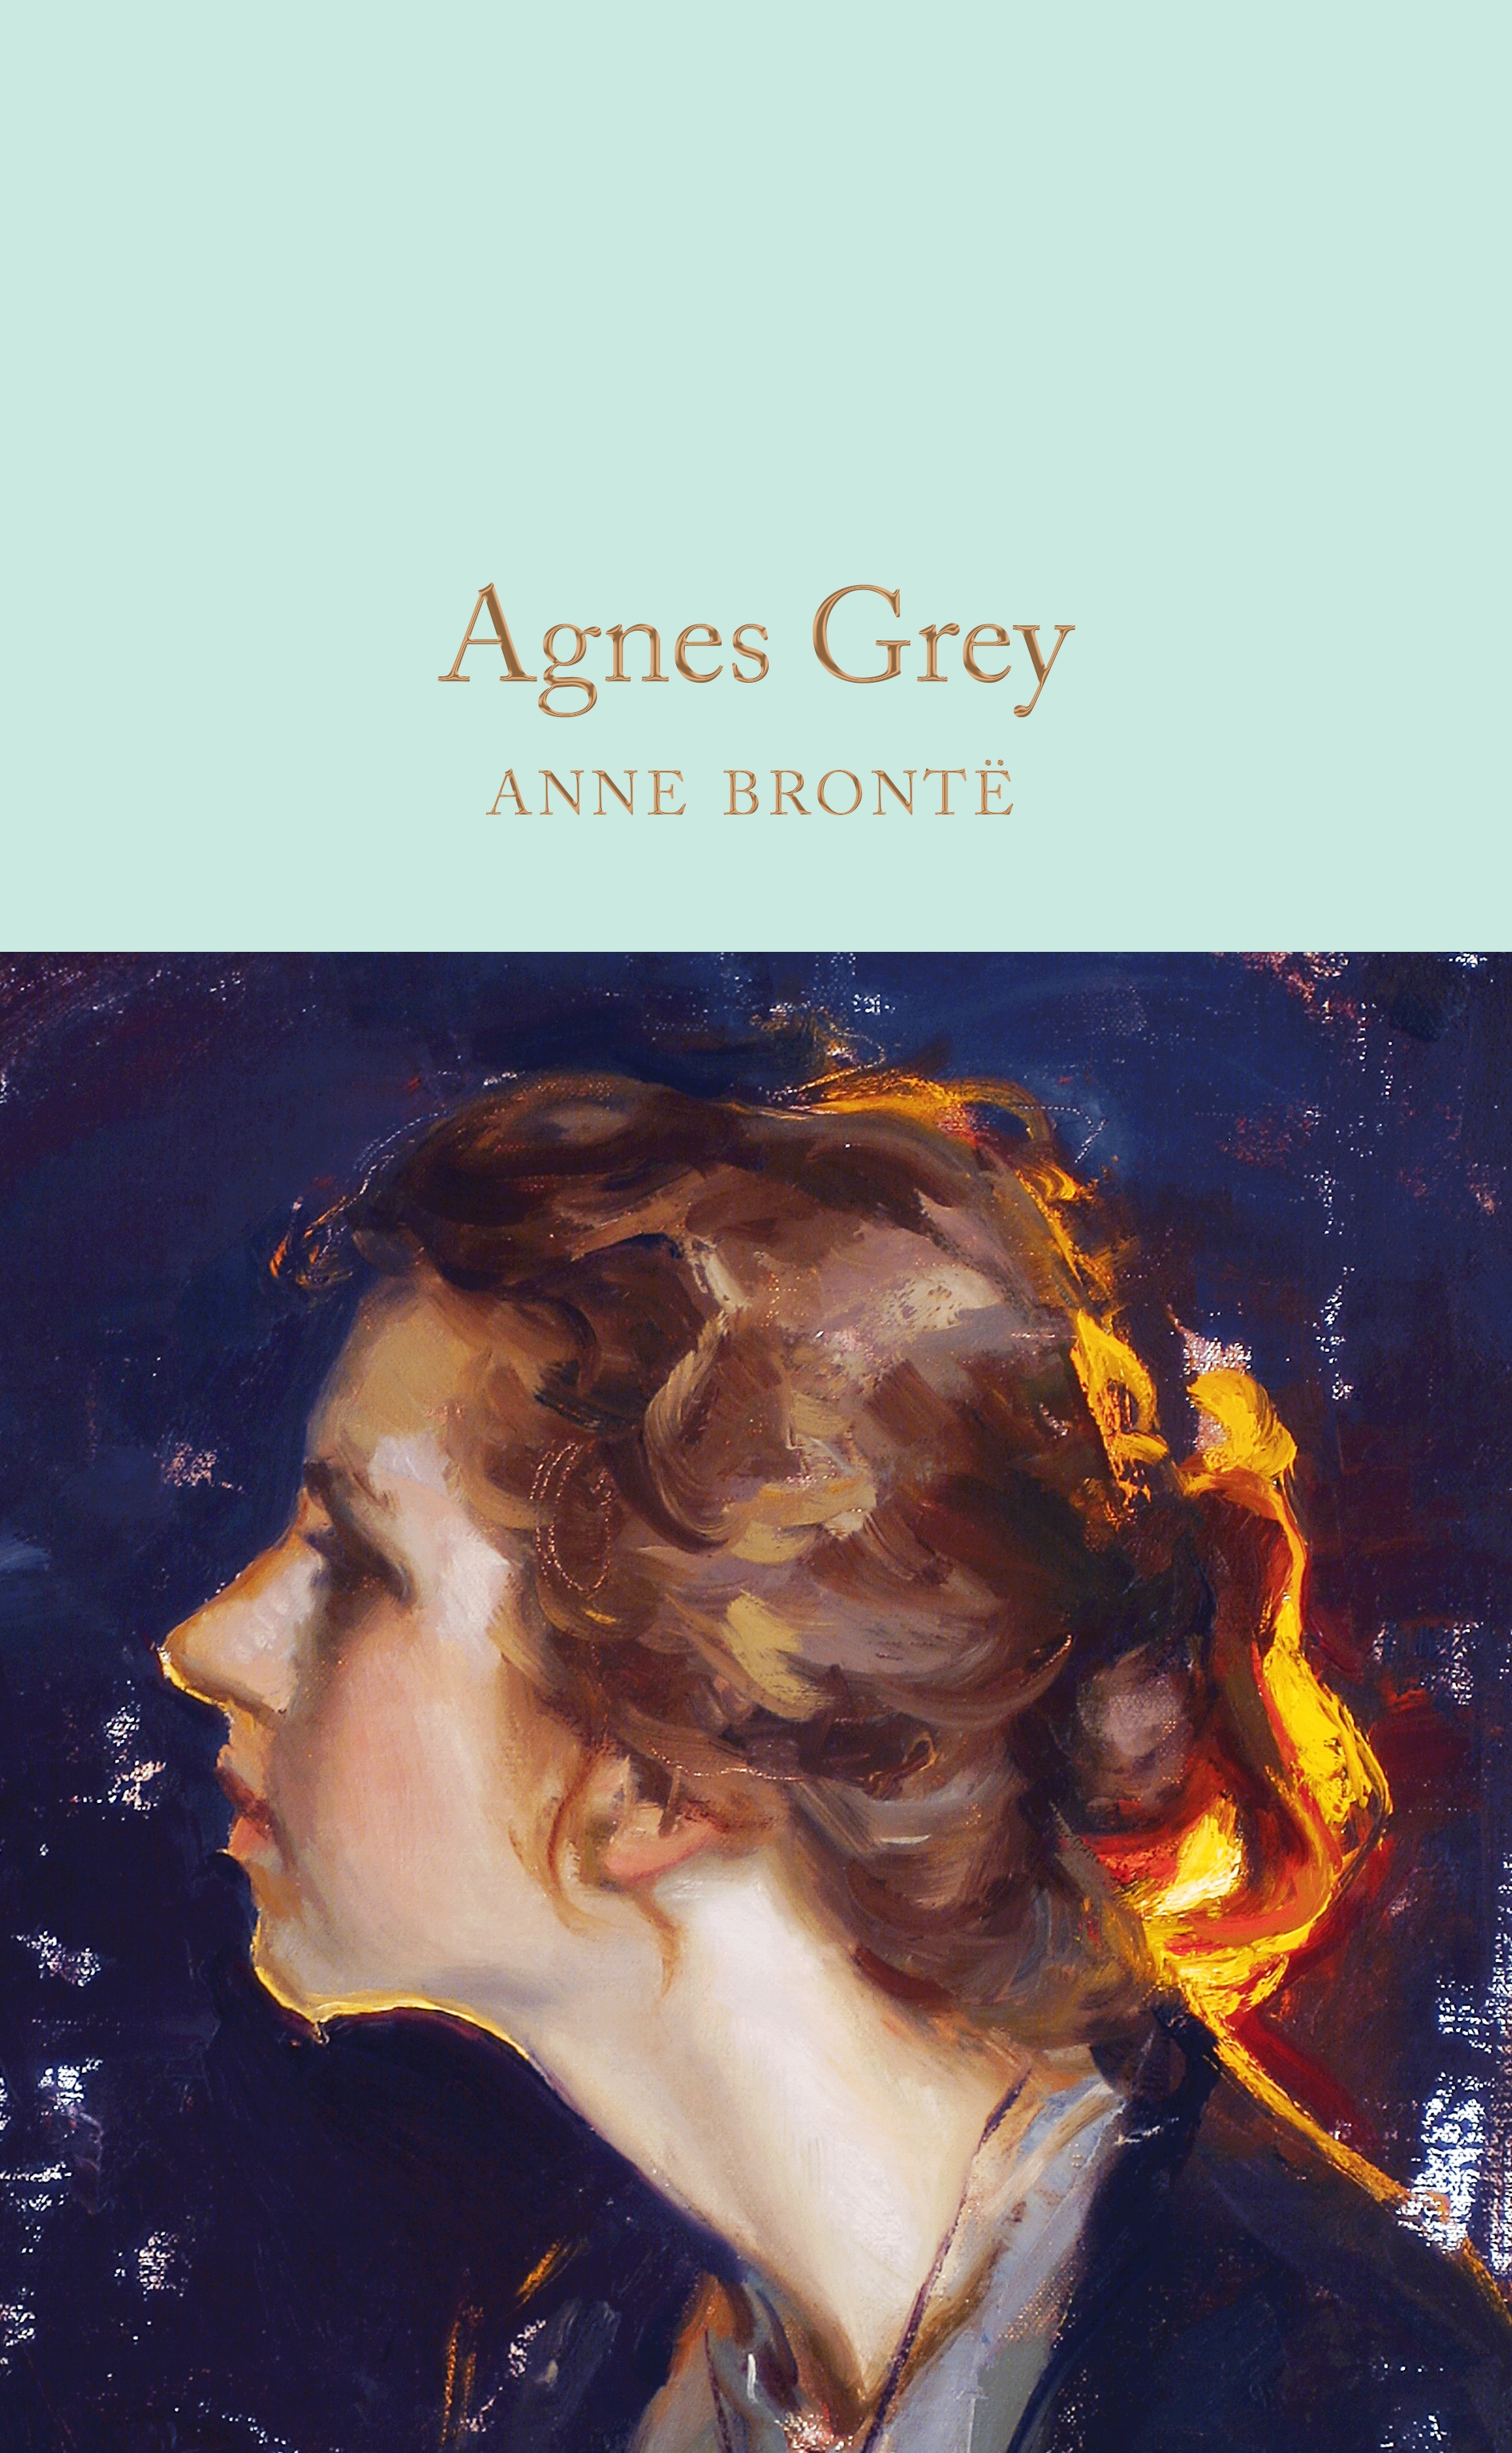 Энн бронте грей. Бронте э. "Agnes Grey". Anne Bronte "Agnes Grey".